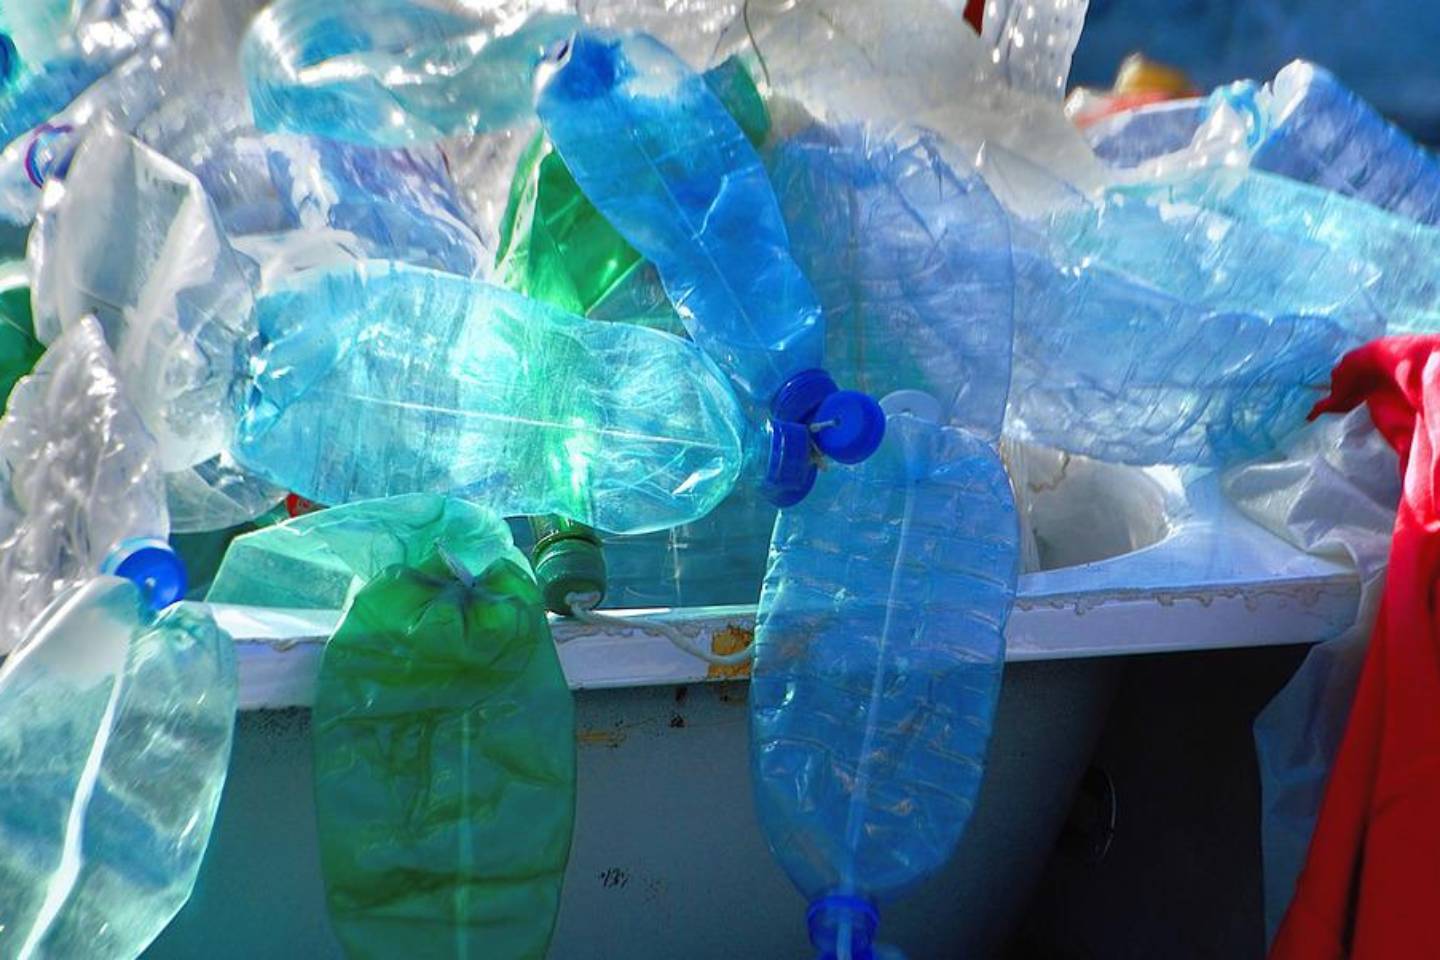 Новости мира / Интересные новости / Нет пластику: в столице ОАЭ запретили использовать полиэтиленовые пакеты